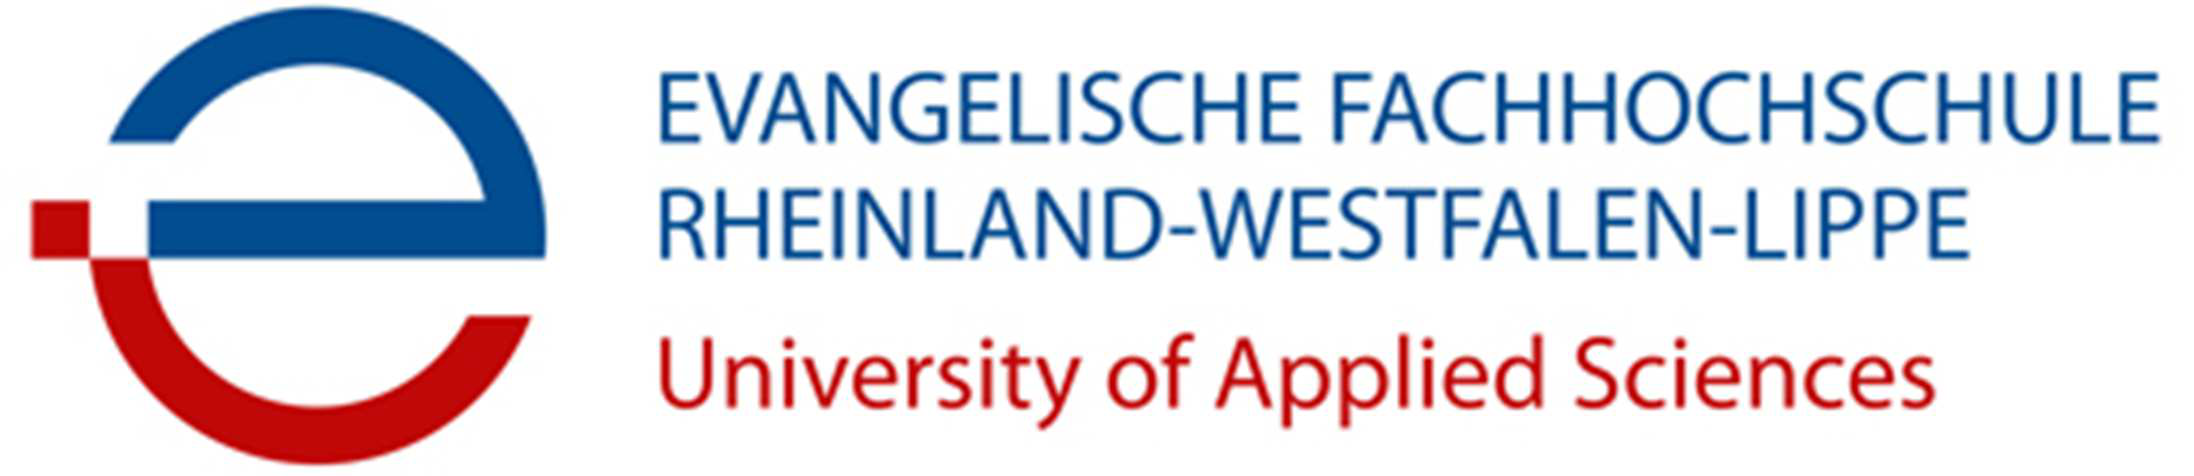 Evangelische Hochschule Rheinland-Westfalen-Lippe Bochum - Logo